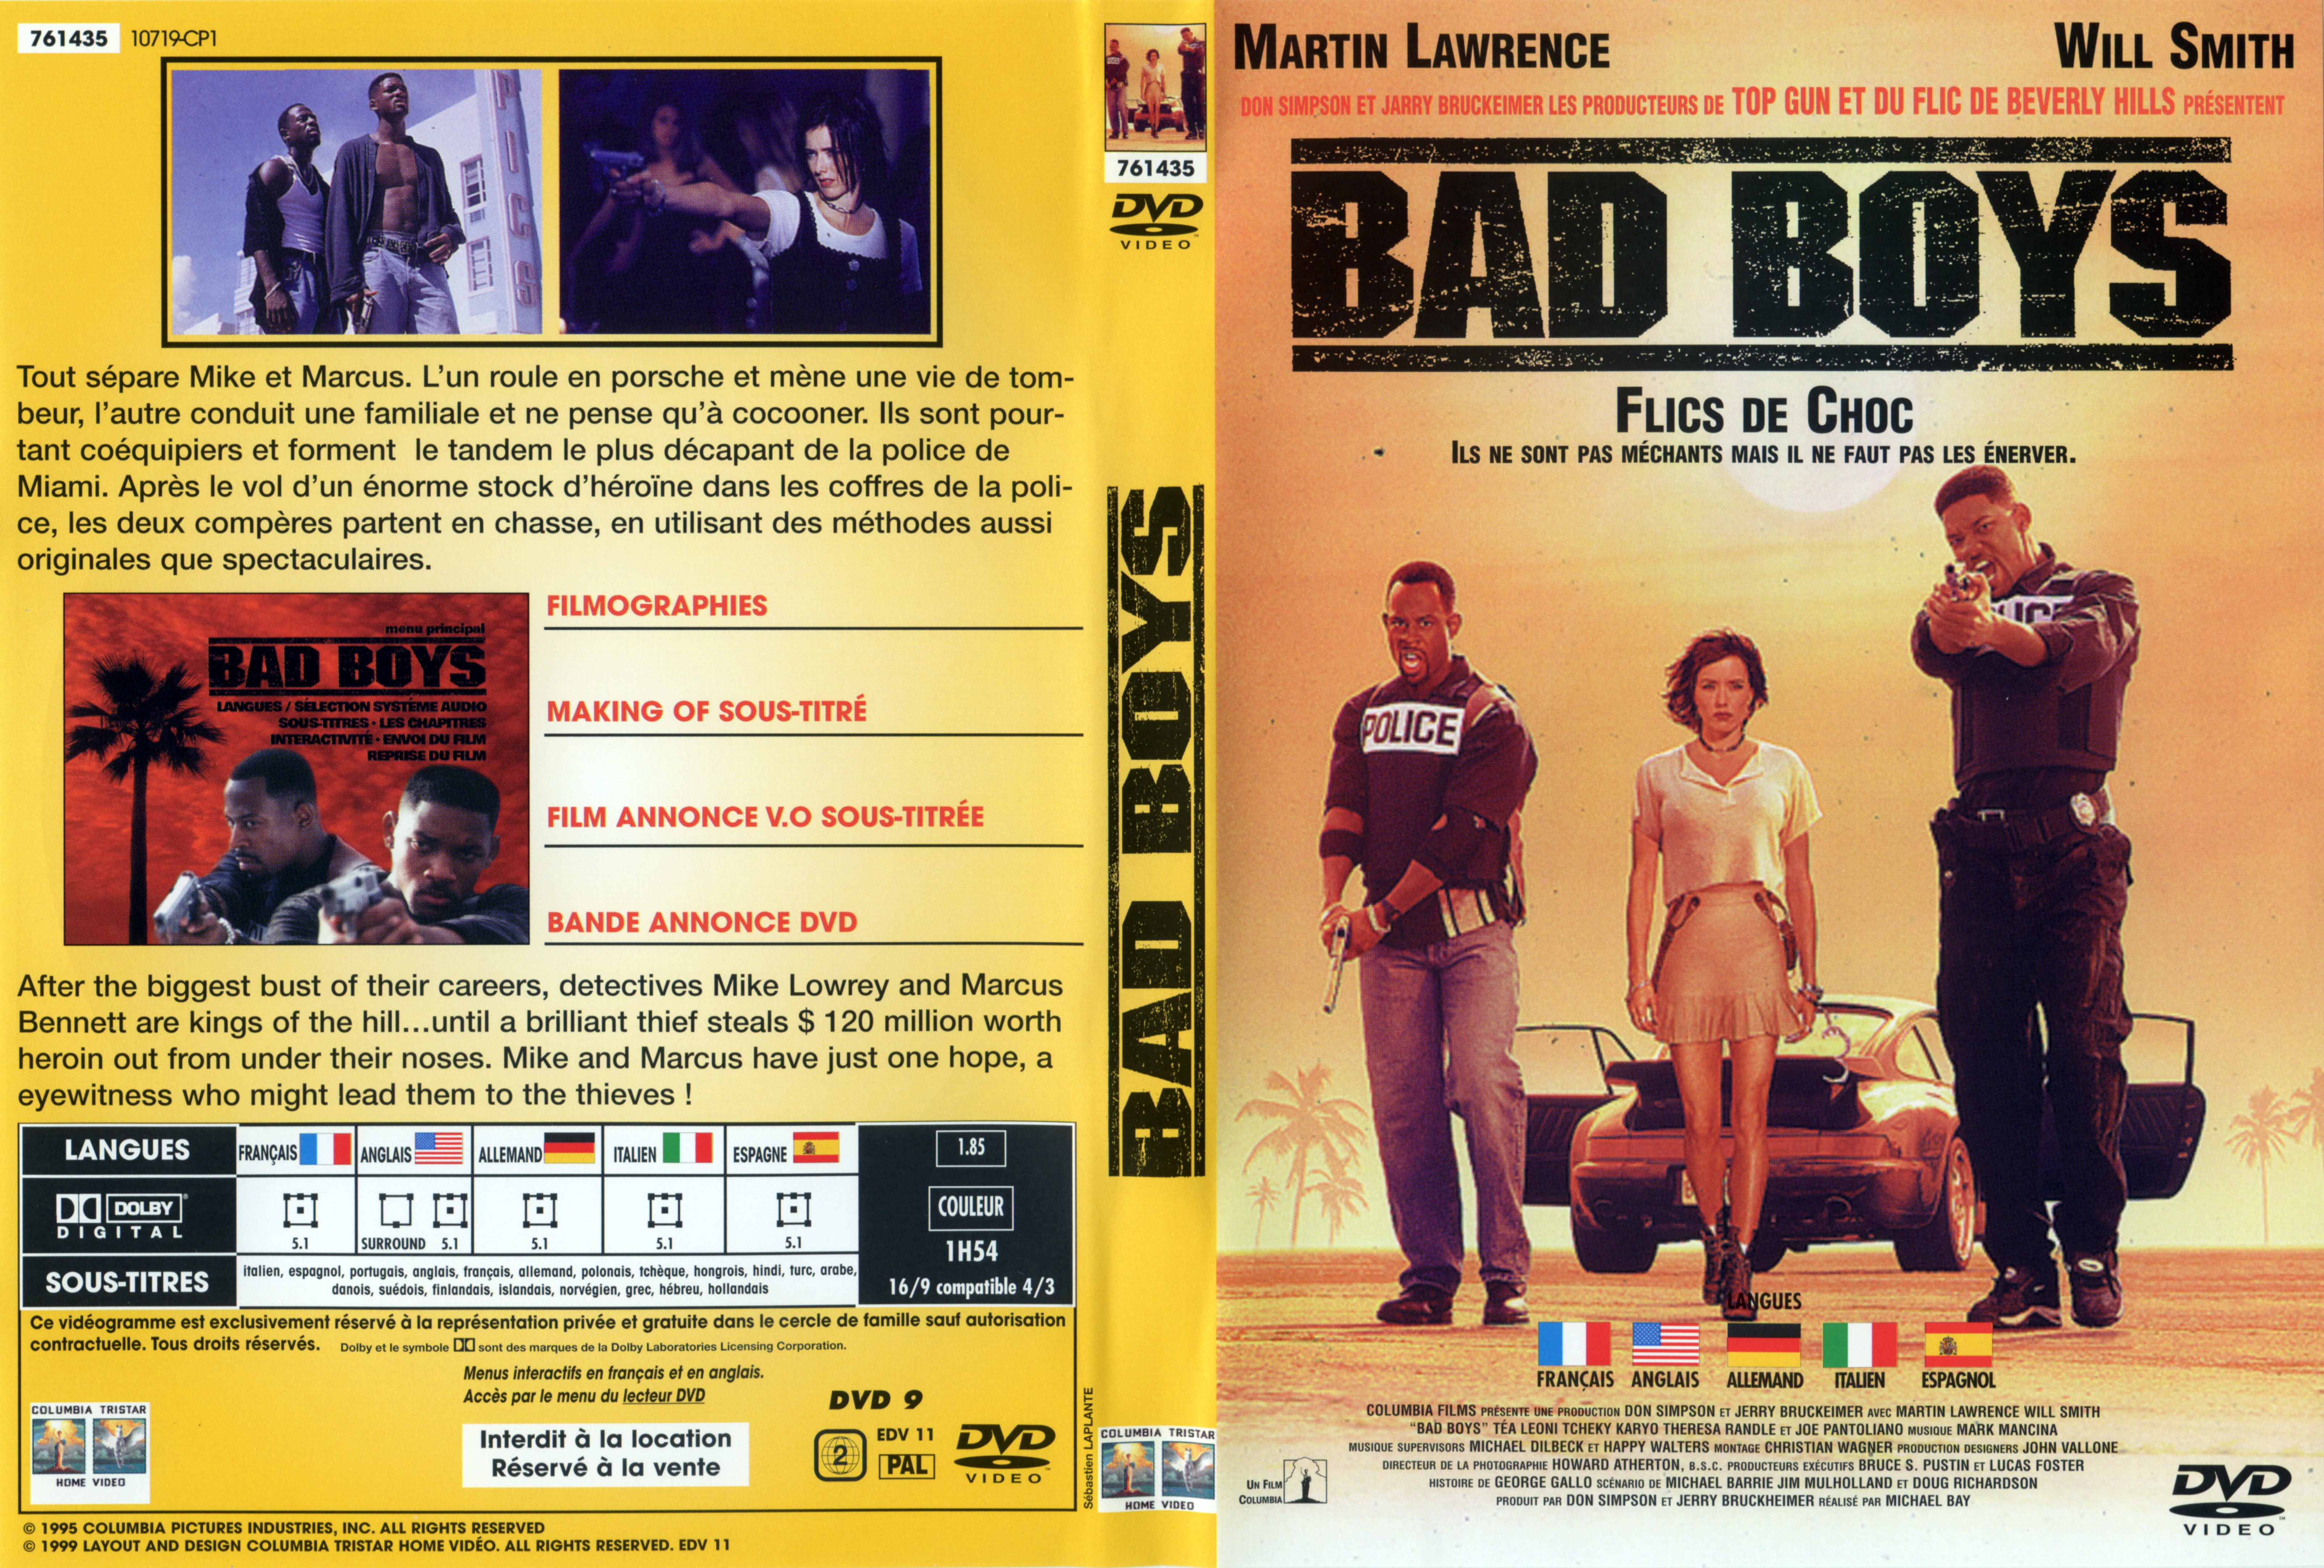 Jaquette DVD Bad boys v2